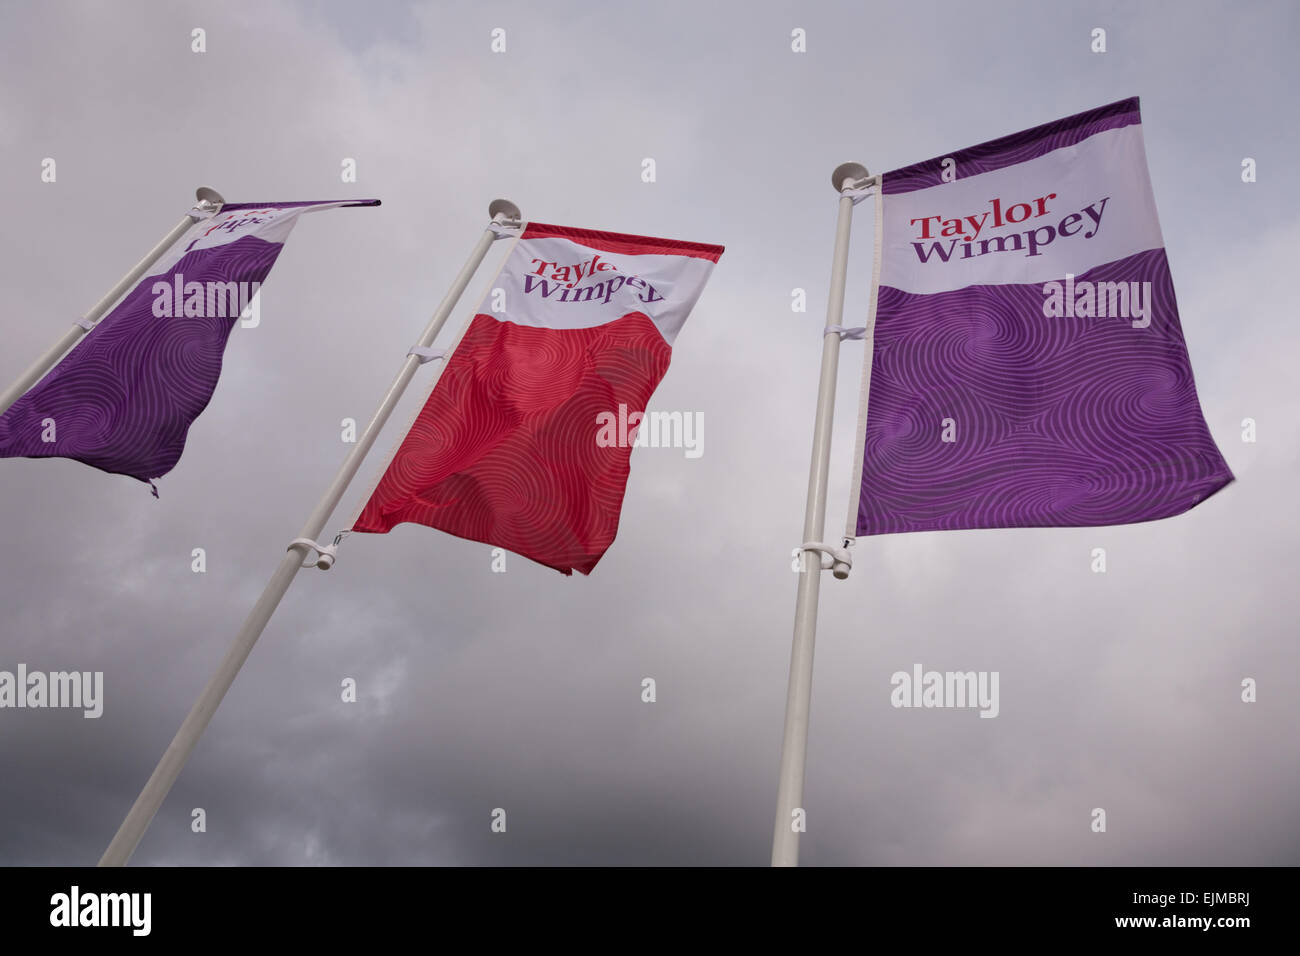 Bandiere promozionali per Taylor Wimpey gli sviluppatori di proprietà di volare in un nuovo sito Foto Stock